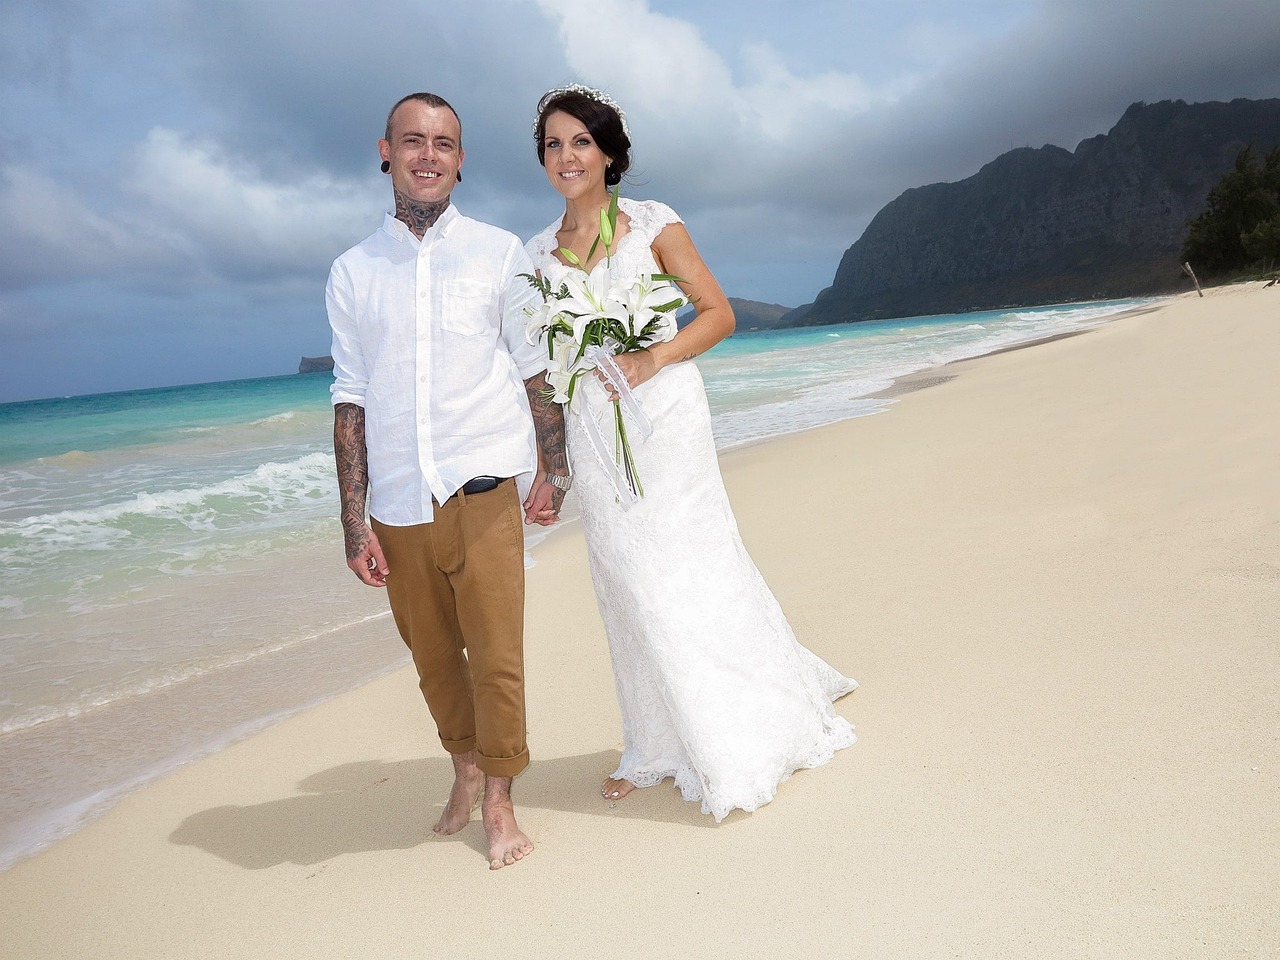 Bride and groom walking a Hawaiian beach.